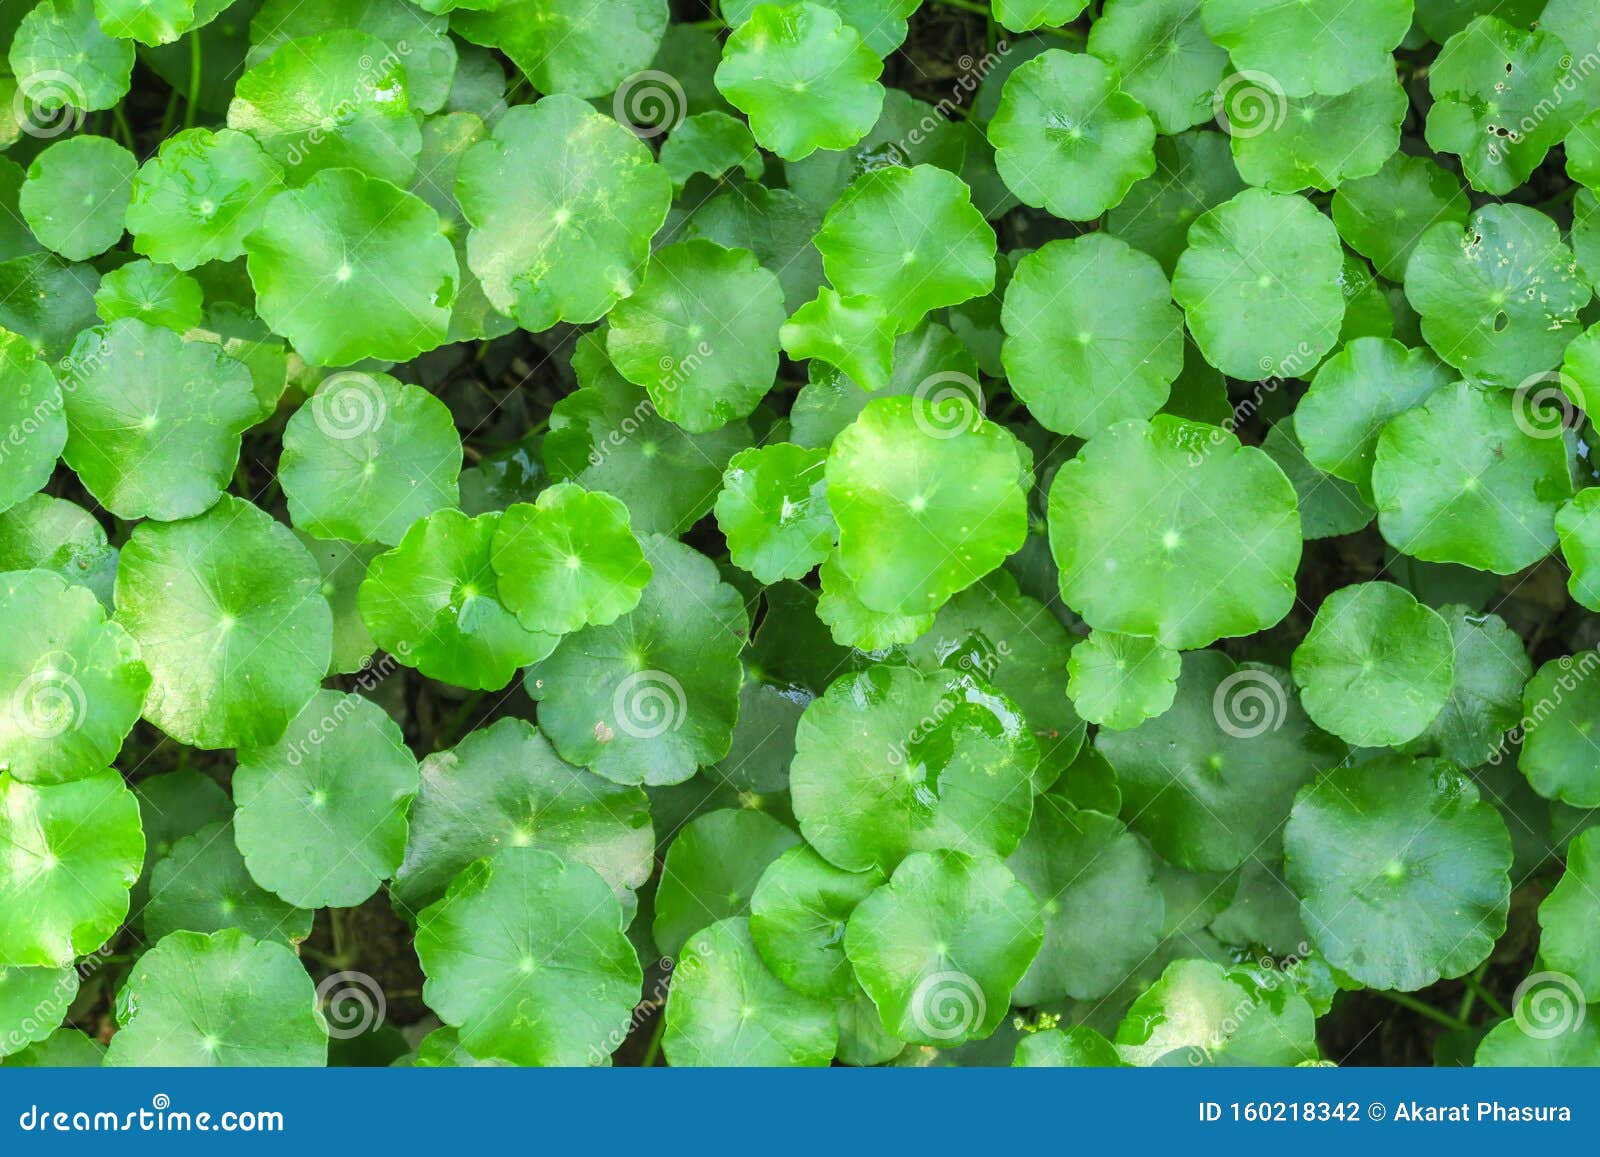 gotu kola or centella asiatica, green nature herb